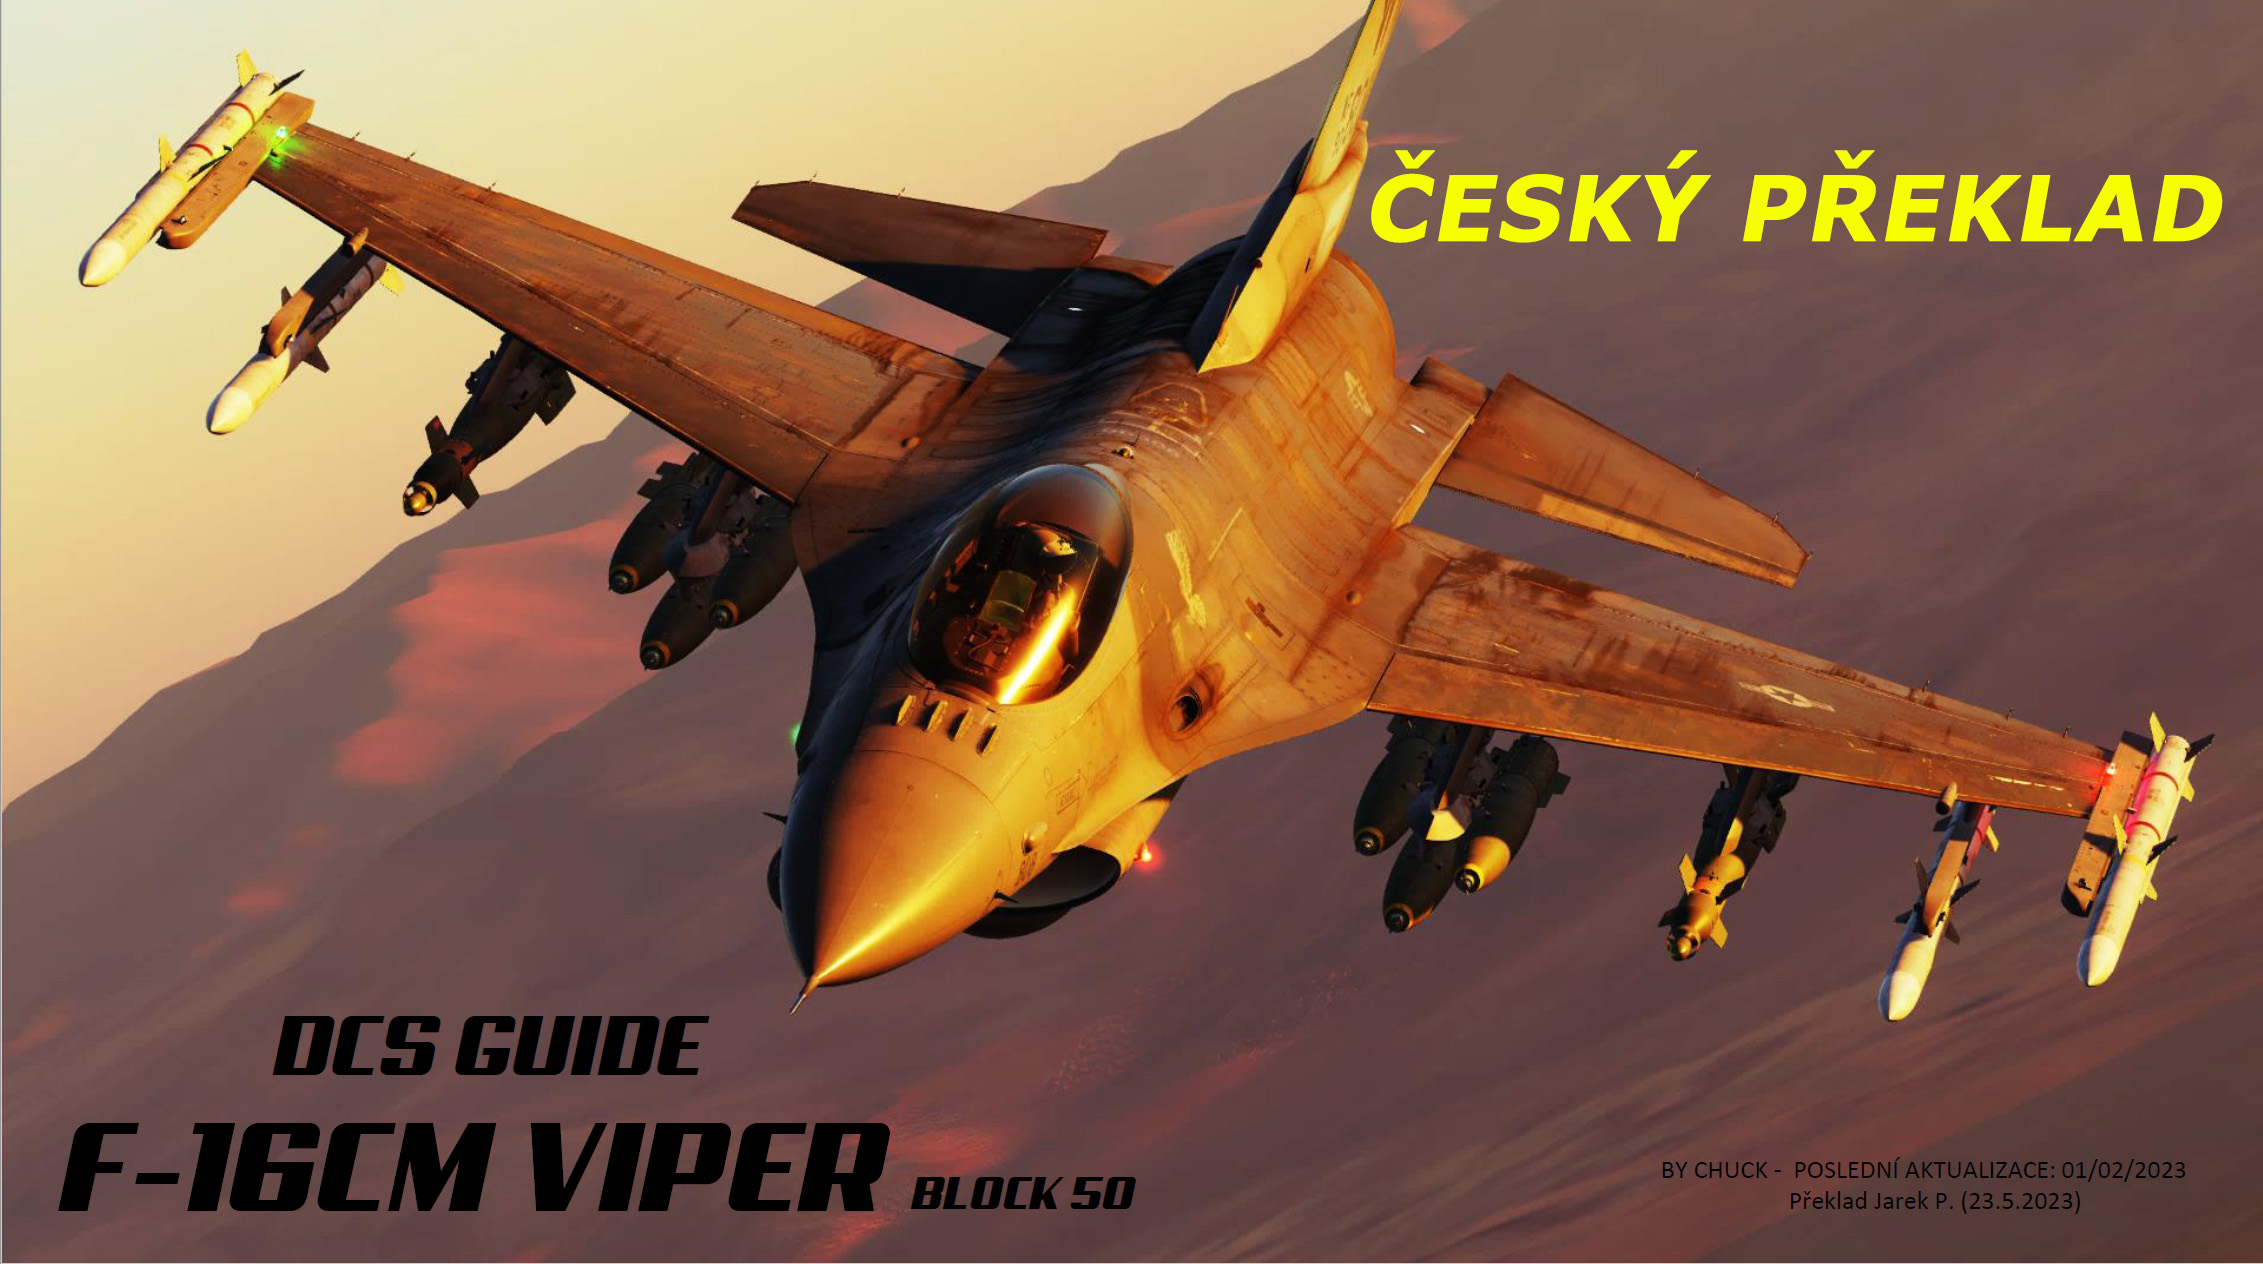 Český překlad manuálu pro DCSF-16CM VIPER